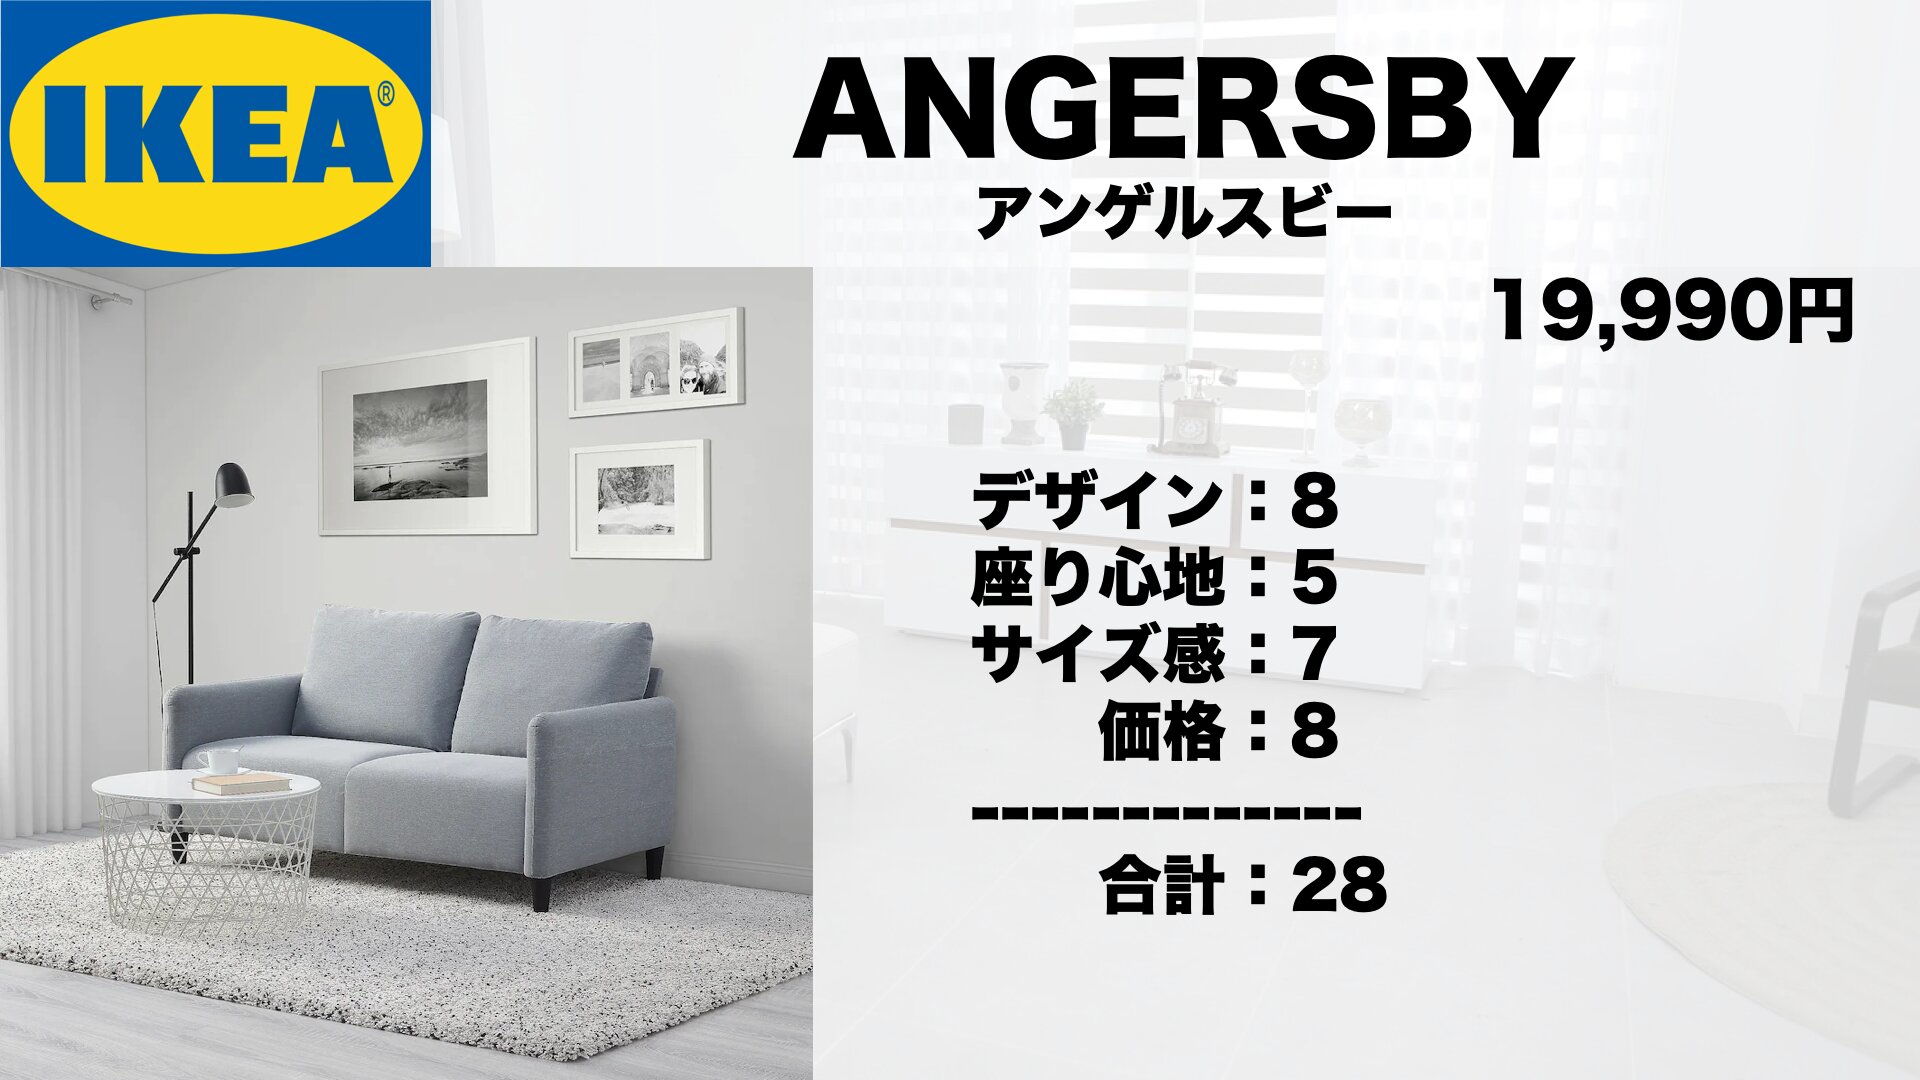 狭い部屋でも置ける】IKEA & ニトリのおすすめコンパクトソファベスト6